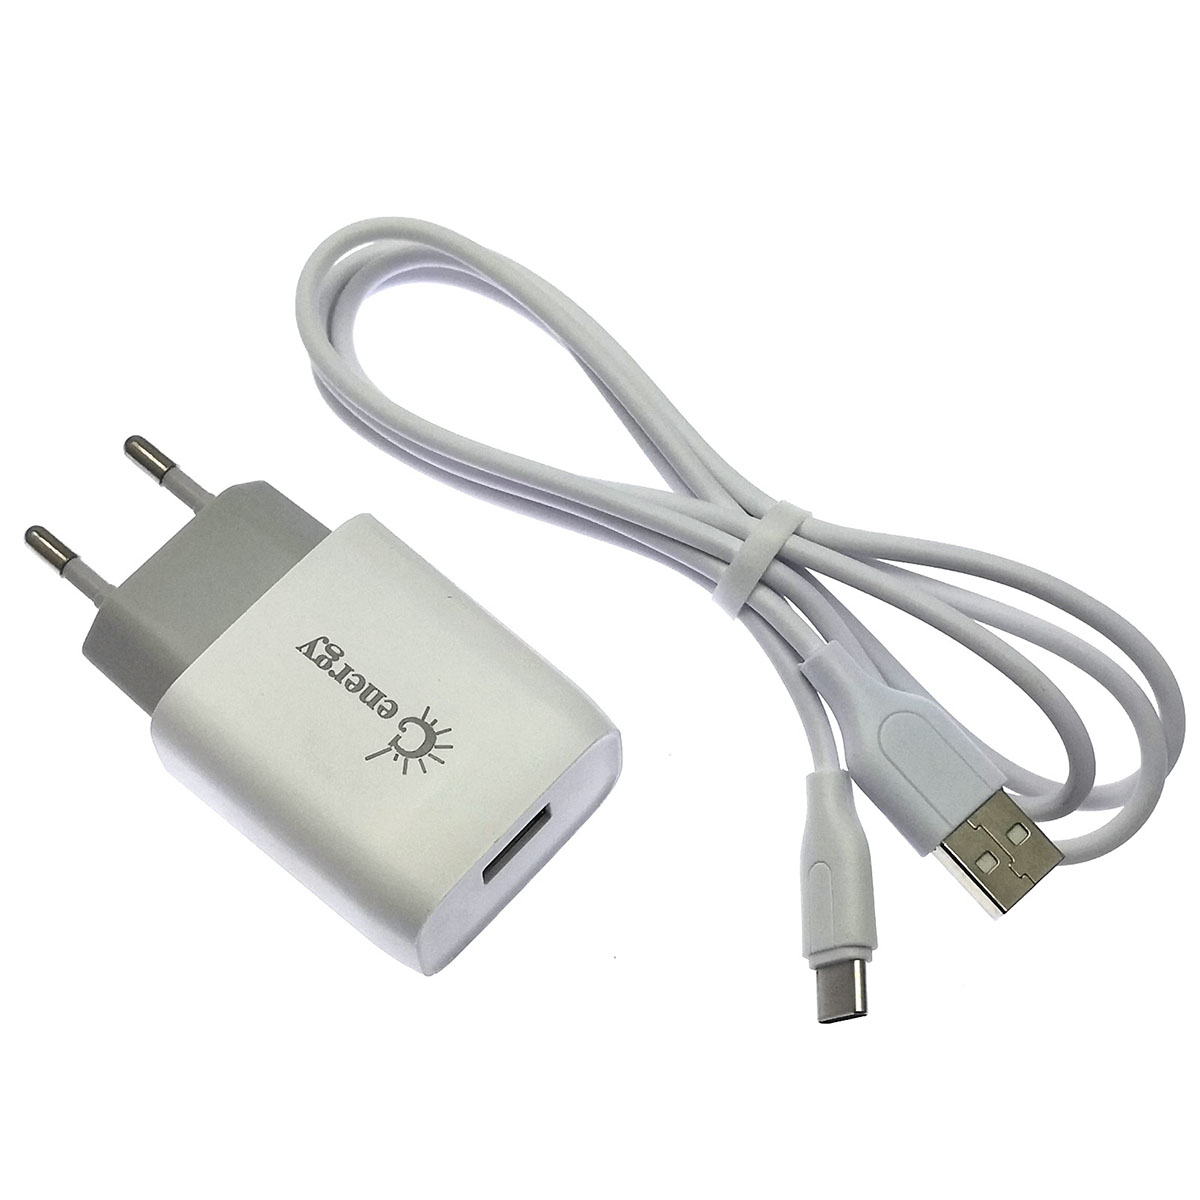 СЗУ (сетевое зарядное устройство) с кабелем Type-C aka USB-C, GENERGY eh-16, 5V-2A, длина 1 метр, цвет белый